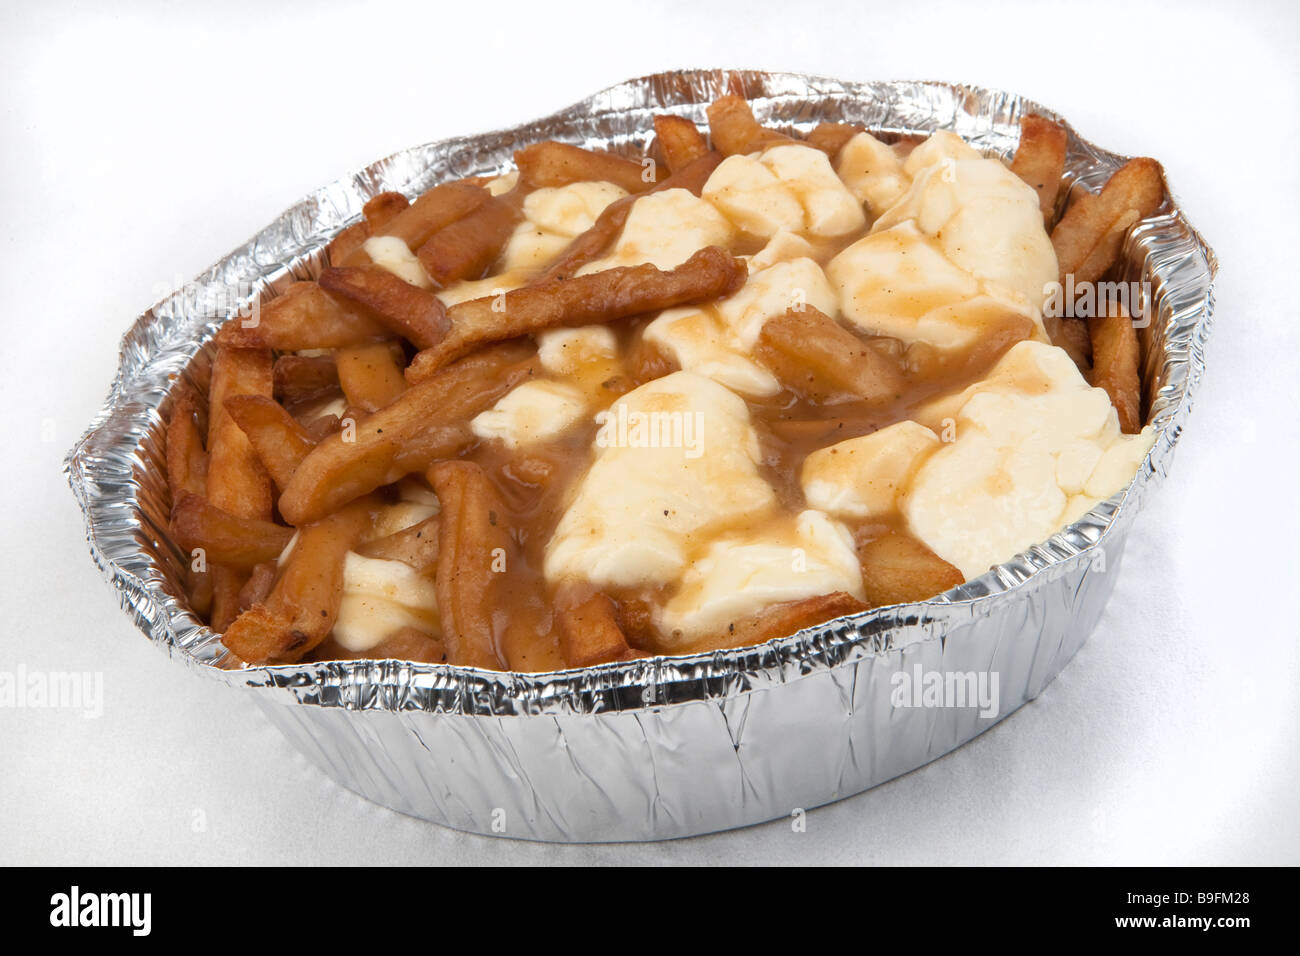 Un poutine sur un fond blanc de la poutine est un plat canadien-français composé de frites recouvertes de fromage en grains frais Banque D'Images